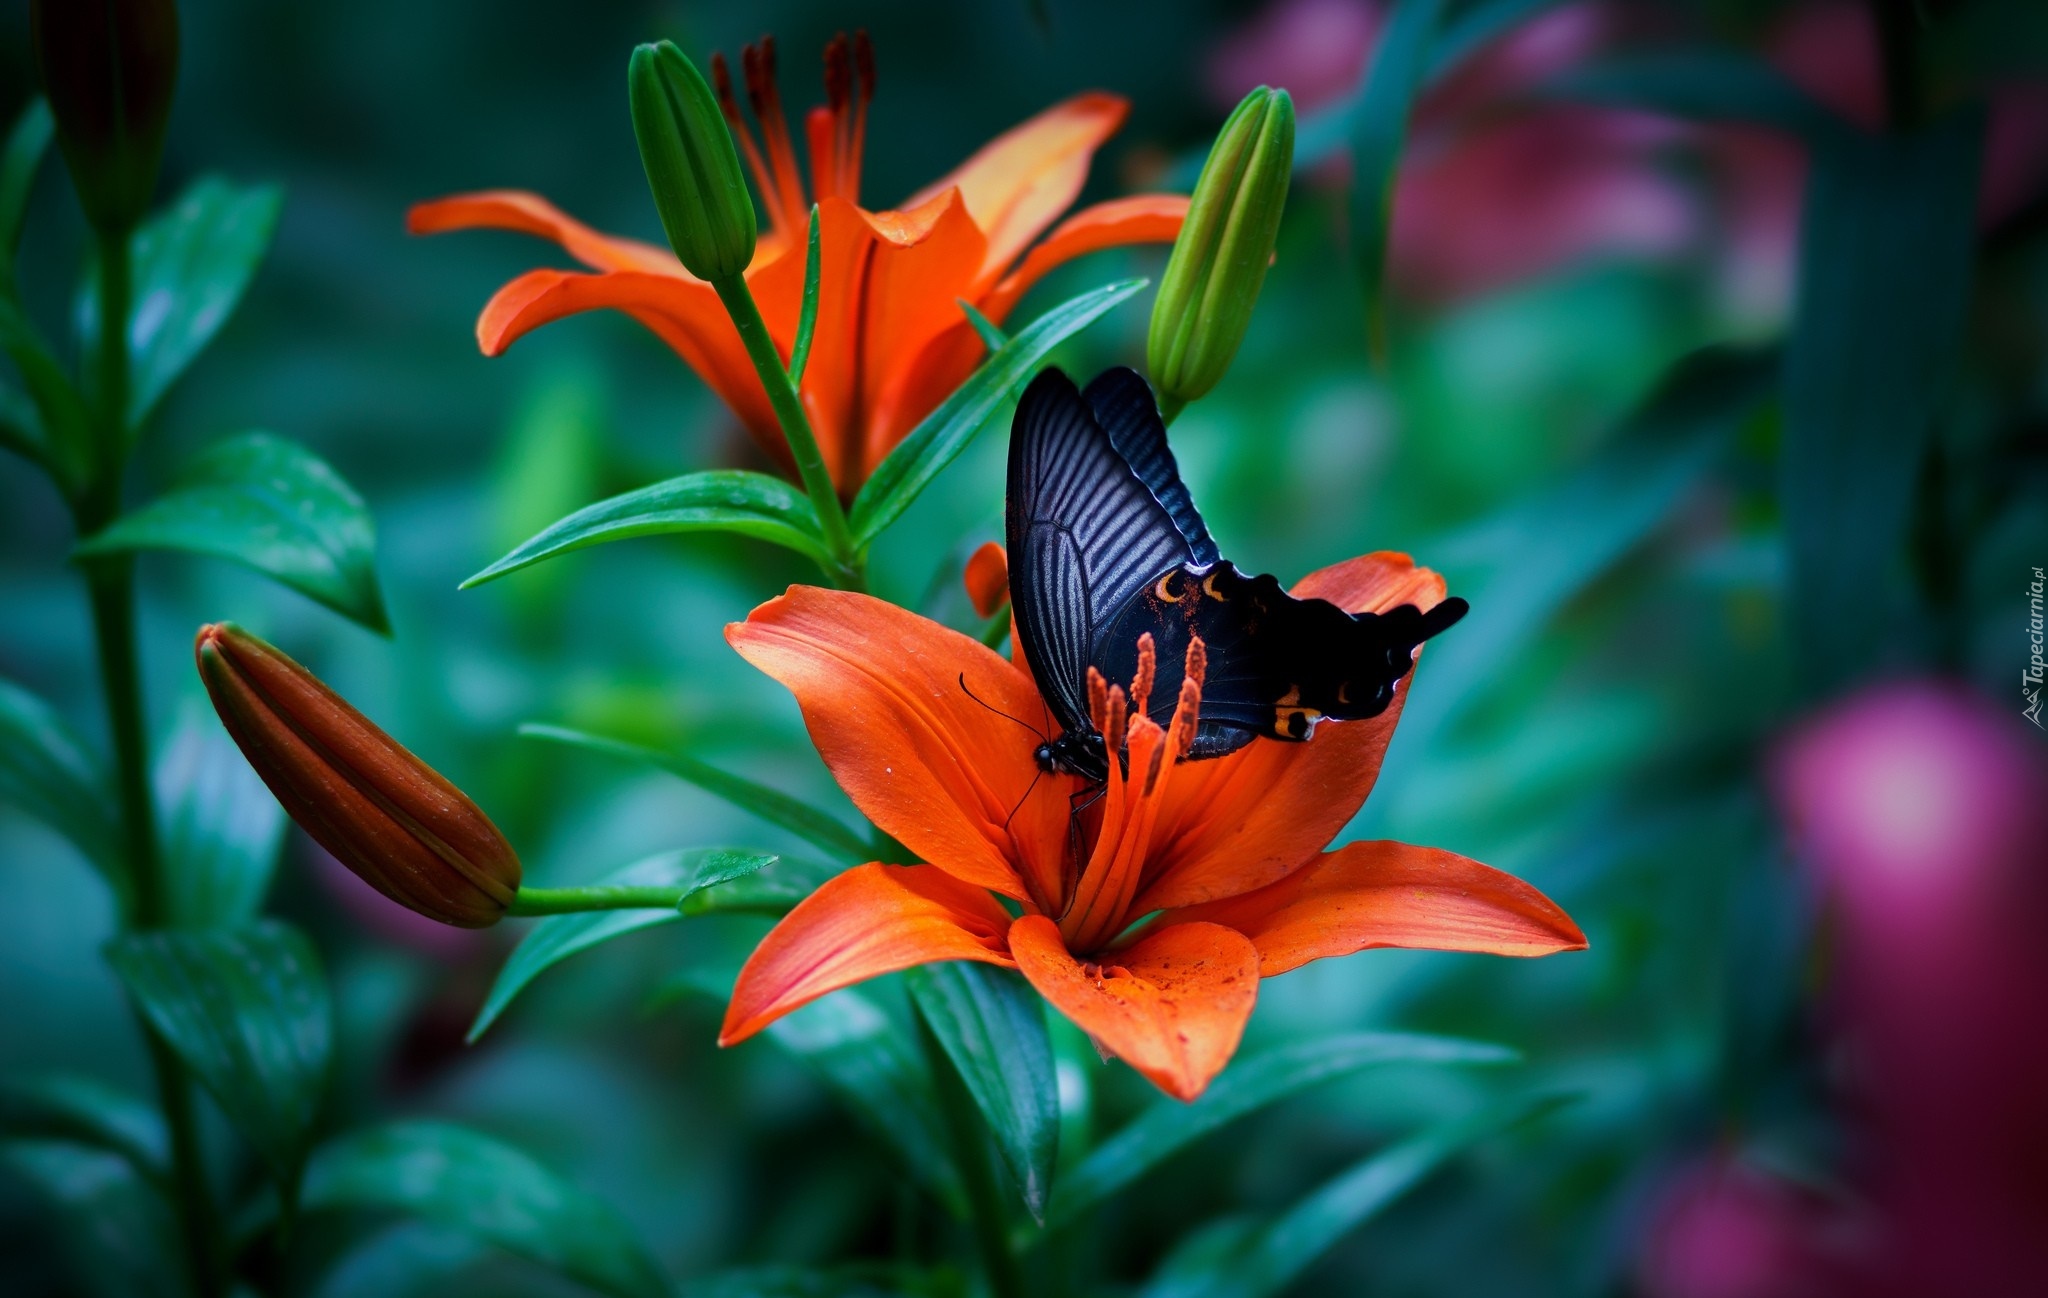 Lilie, Kwiaty, Czarny, Motyl, Papilio okinawensis